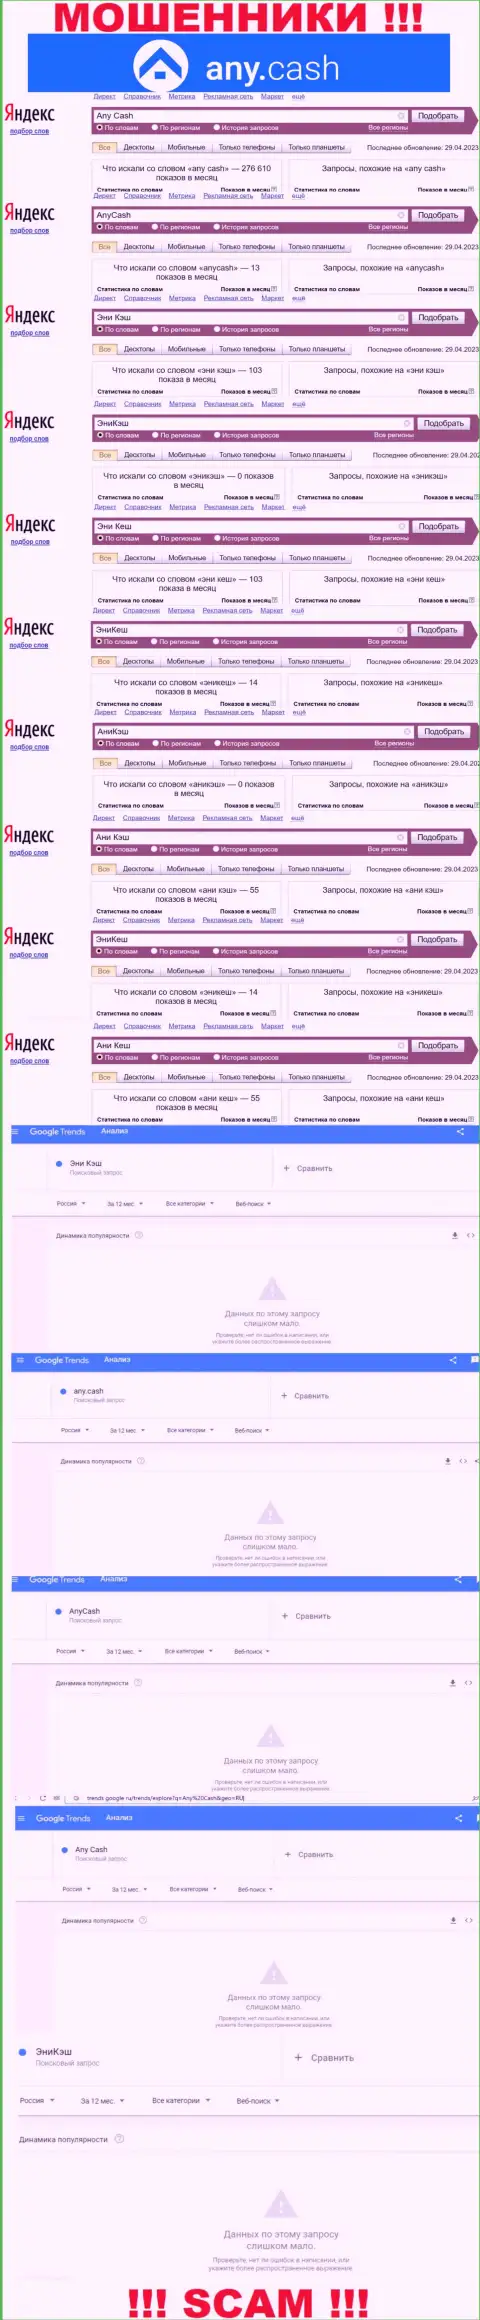 Скриншот результатов online-запросов по незаконно действующей компании Эни Кэш